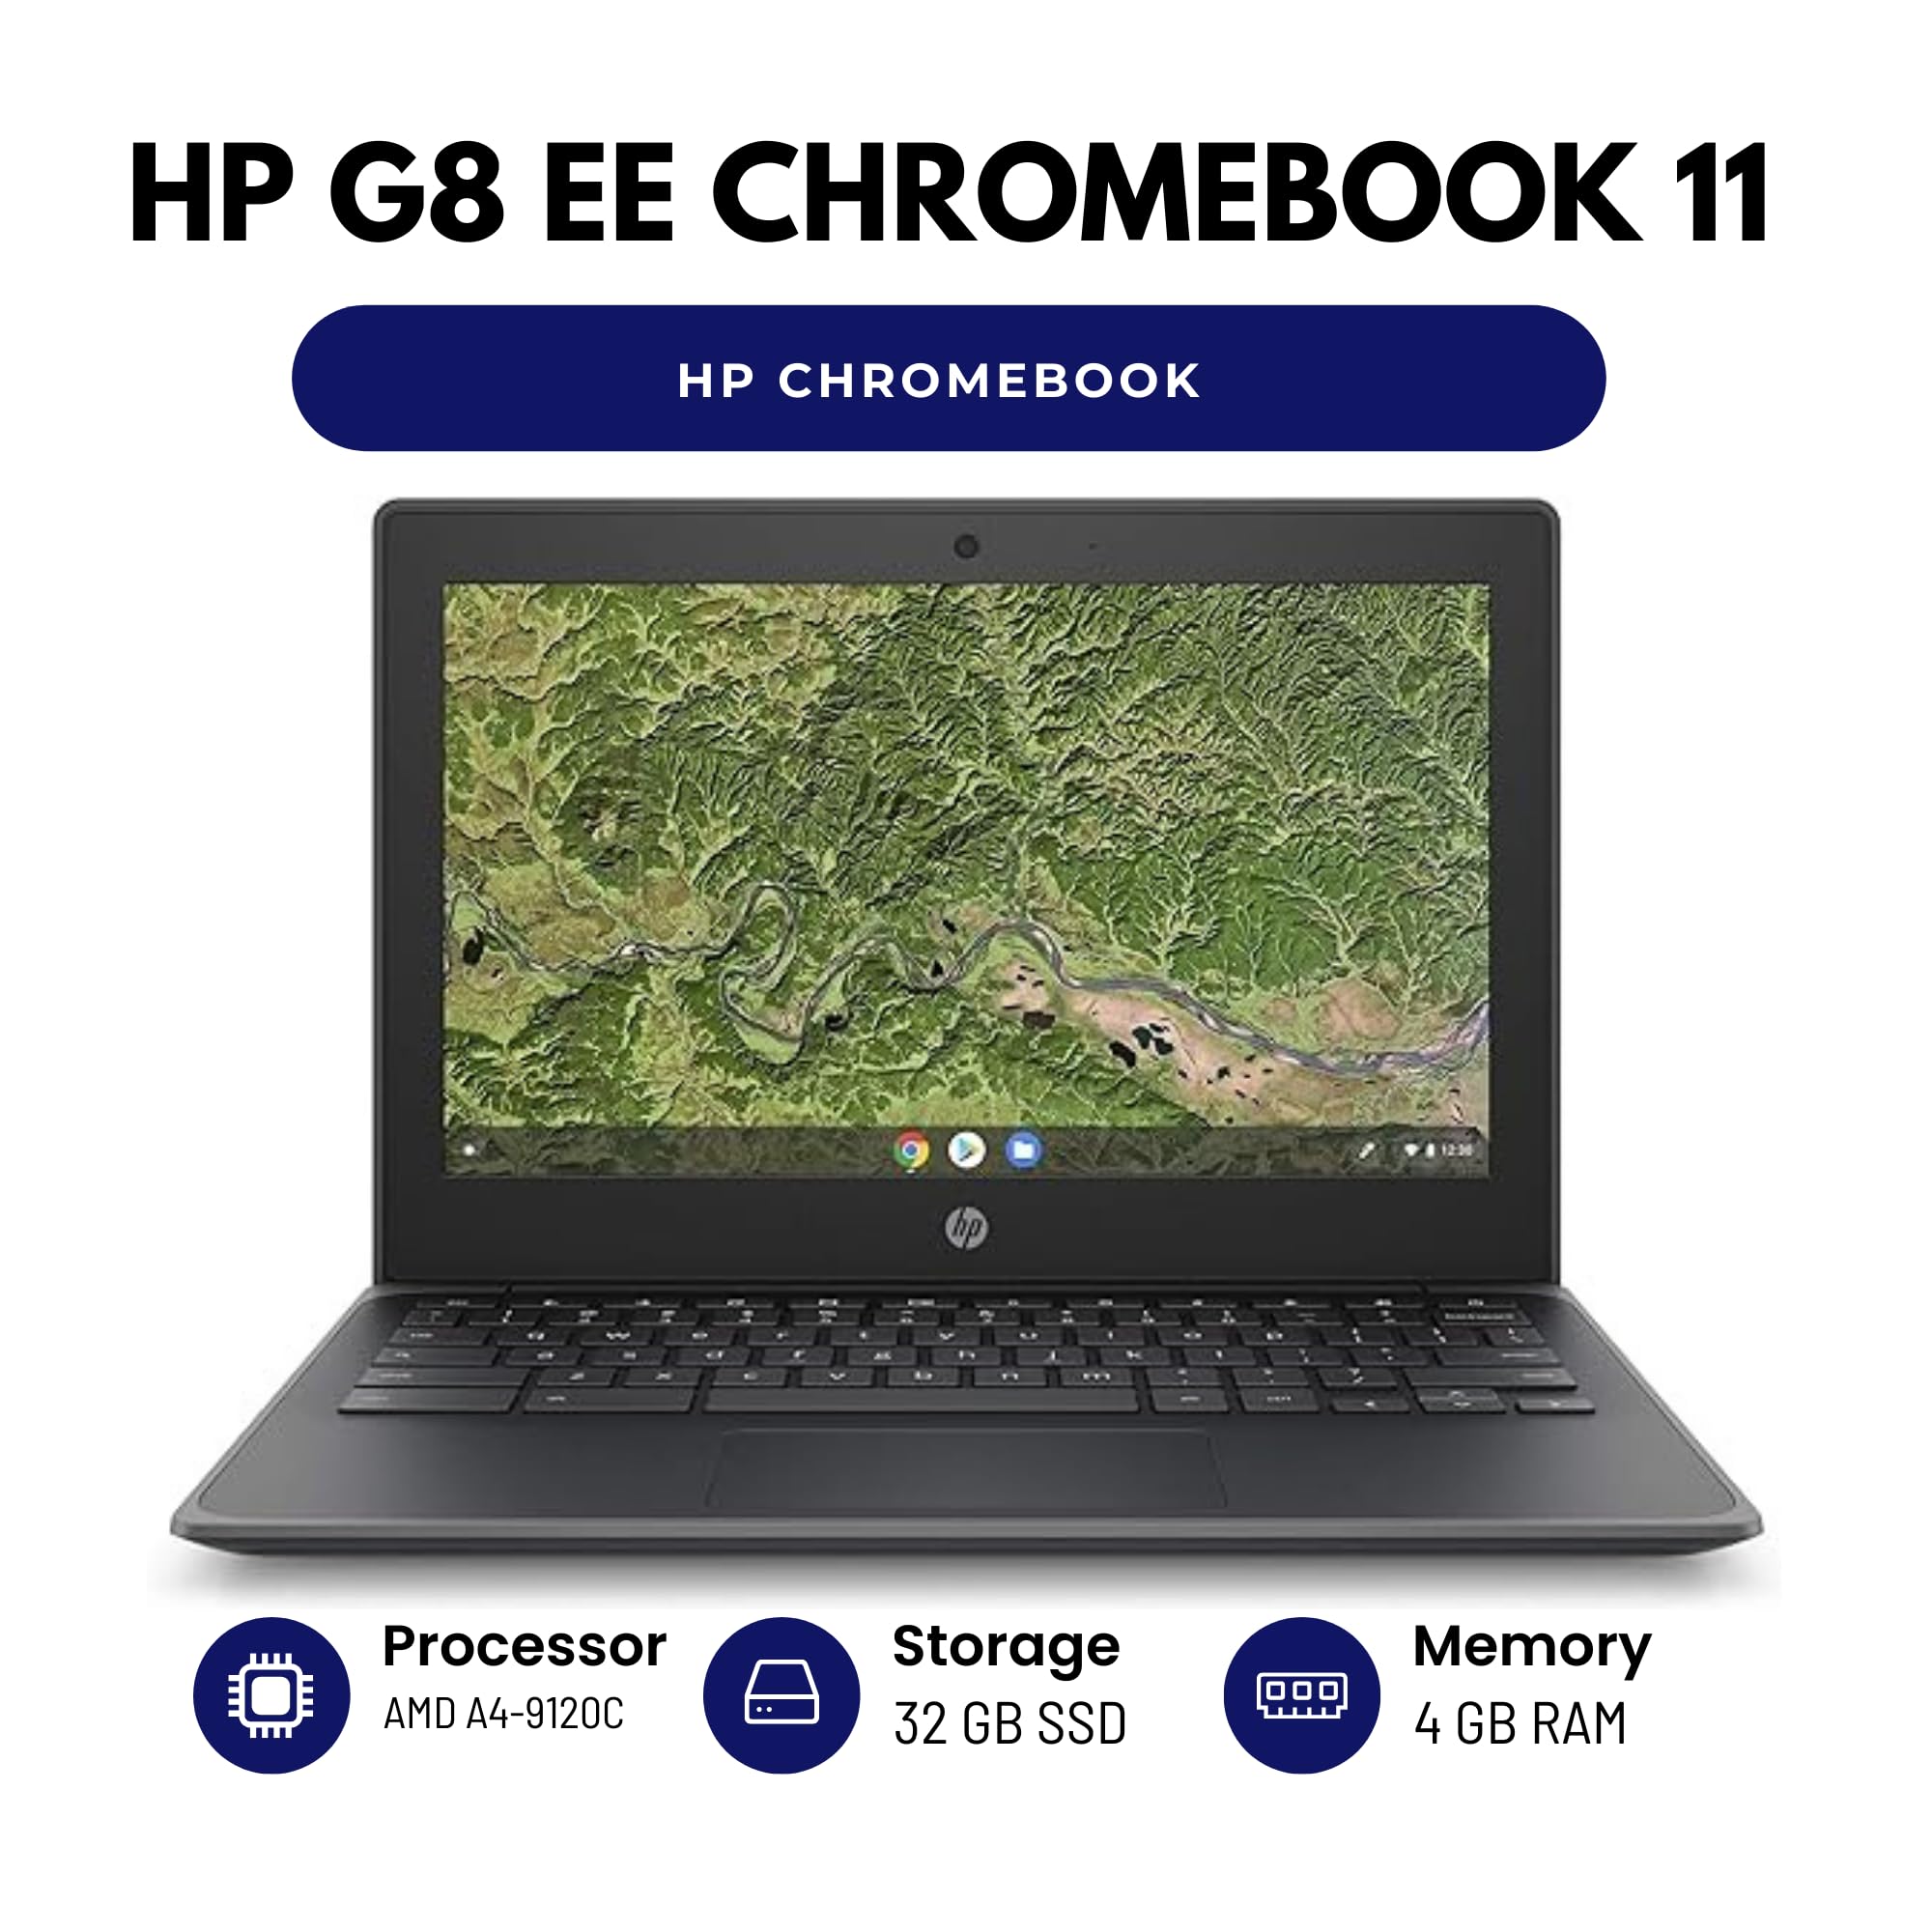 estock HP G8 EE ChromeBook 11-11.6" Screen - Intel N4120 CPU - 4GB RAM - 32GB SSD - Renewed